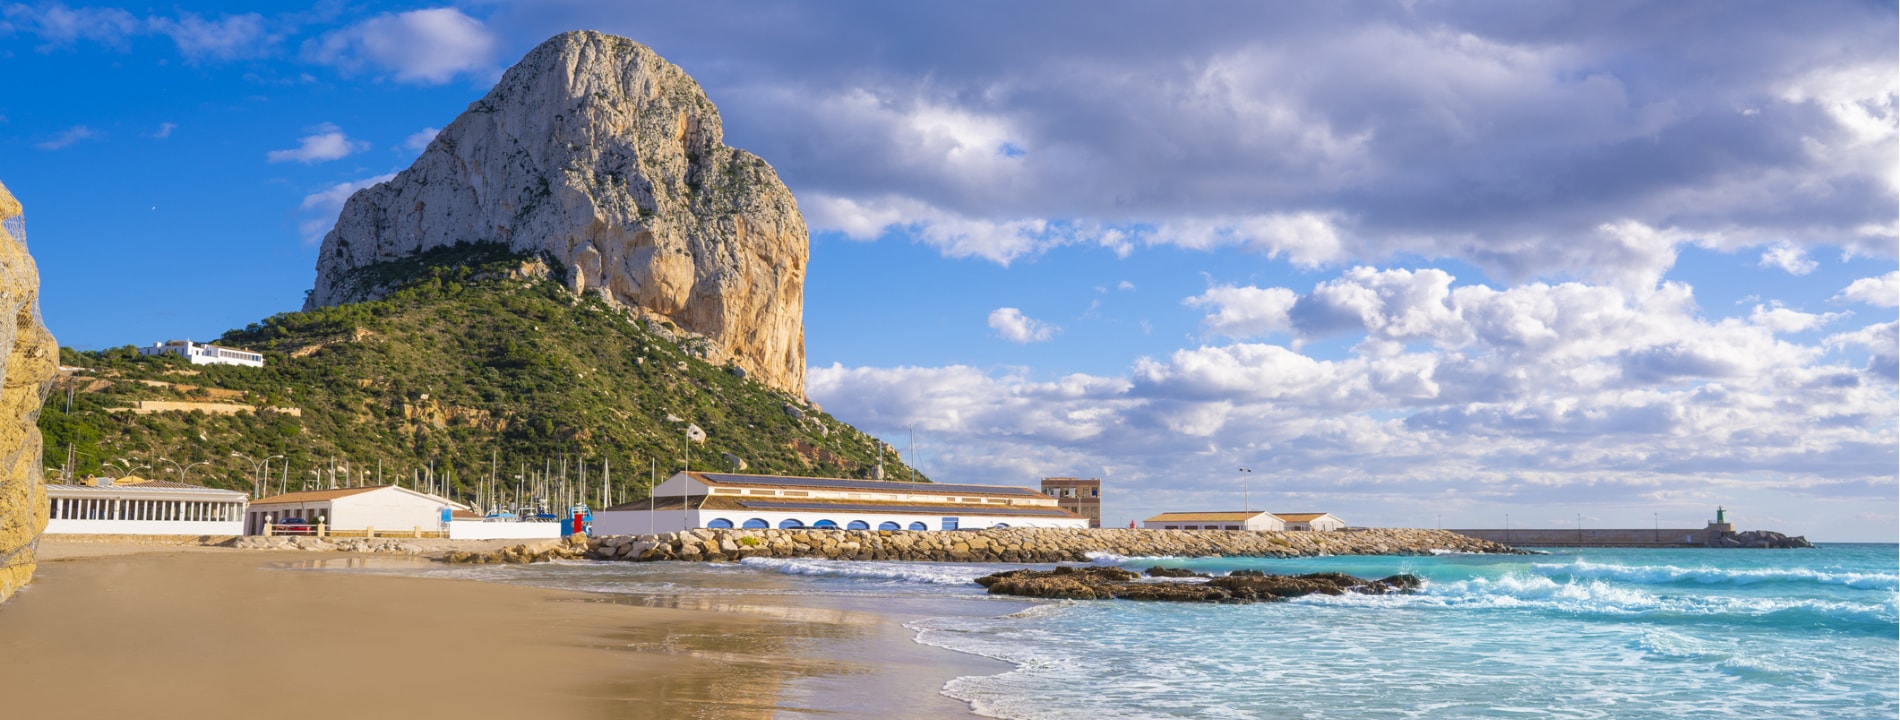 Calpe Calp Cantal Roig spiaggia di Alicante | Eden Viaggi